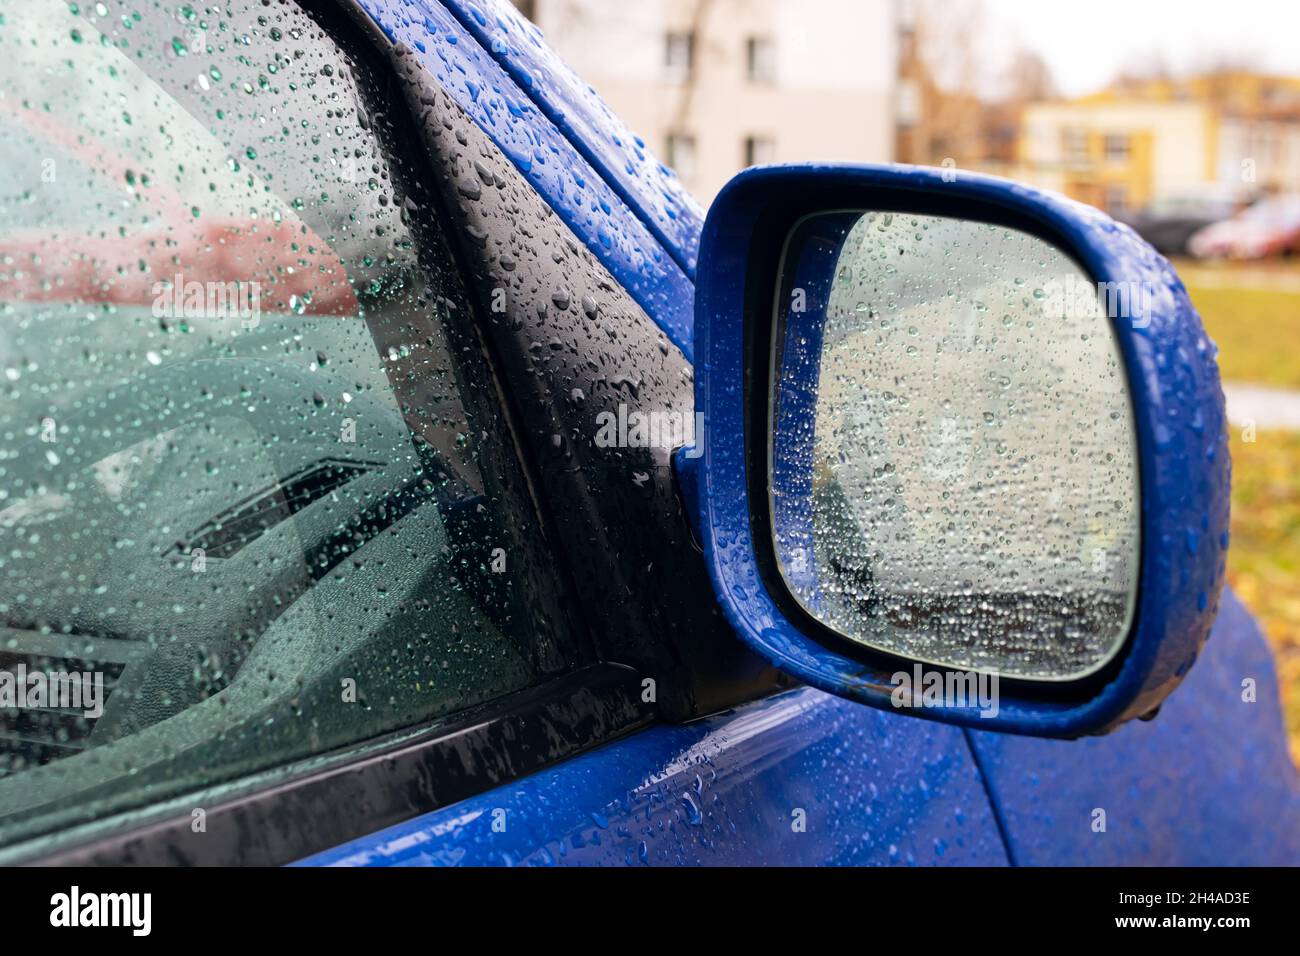 Außenspiegel des Autos mit Regen Stockfotografie - Alamy